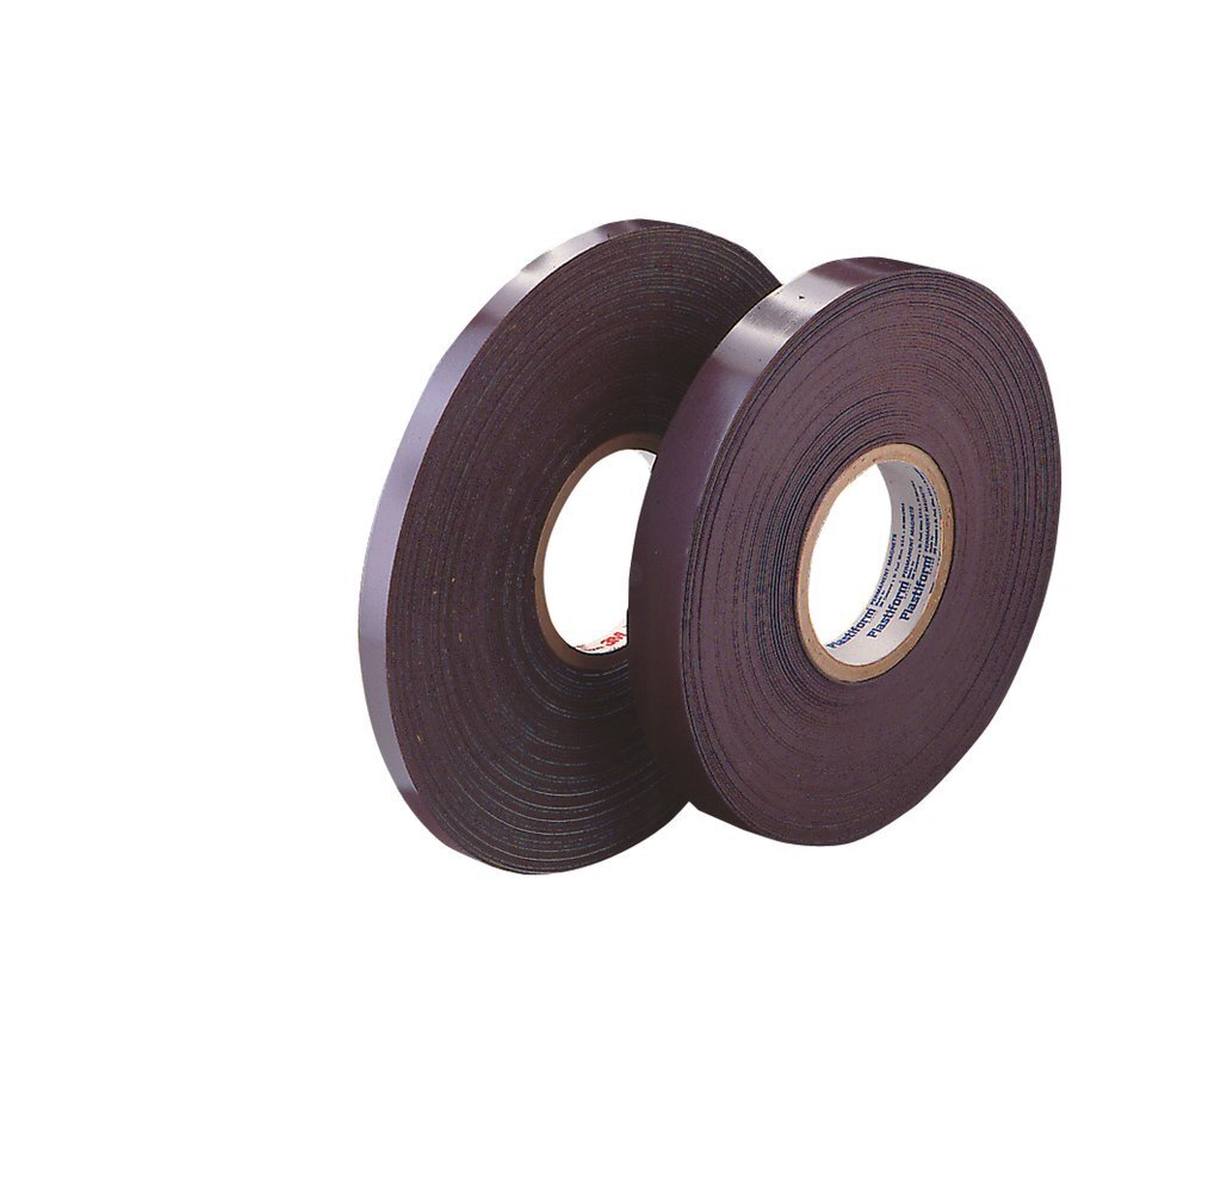 3M 1317 Nastro adesivo magnetico, marrone, 19 mm x 30,5 m, 1,5 mm